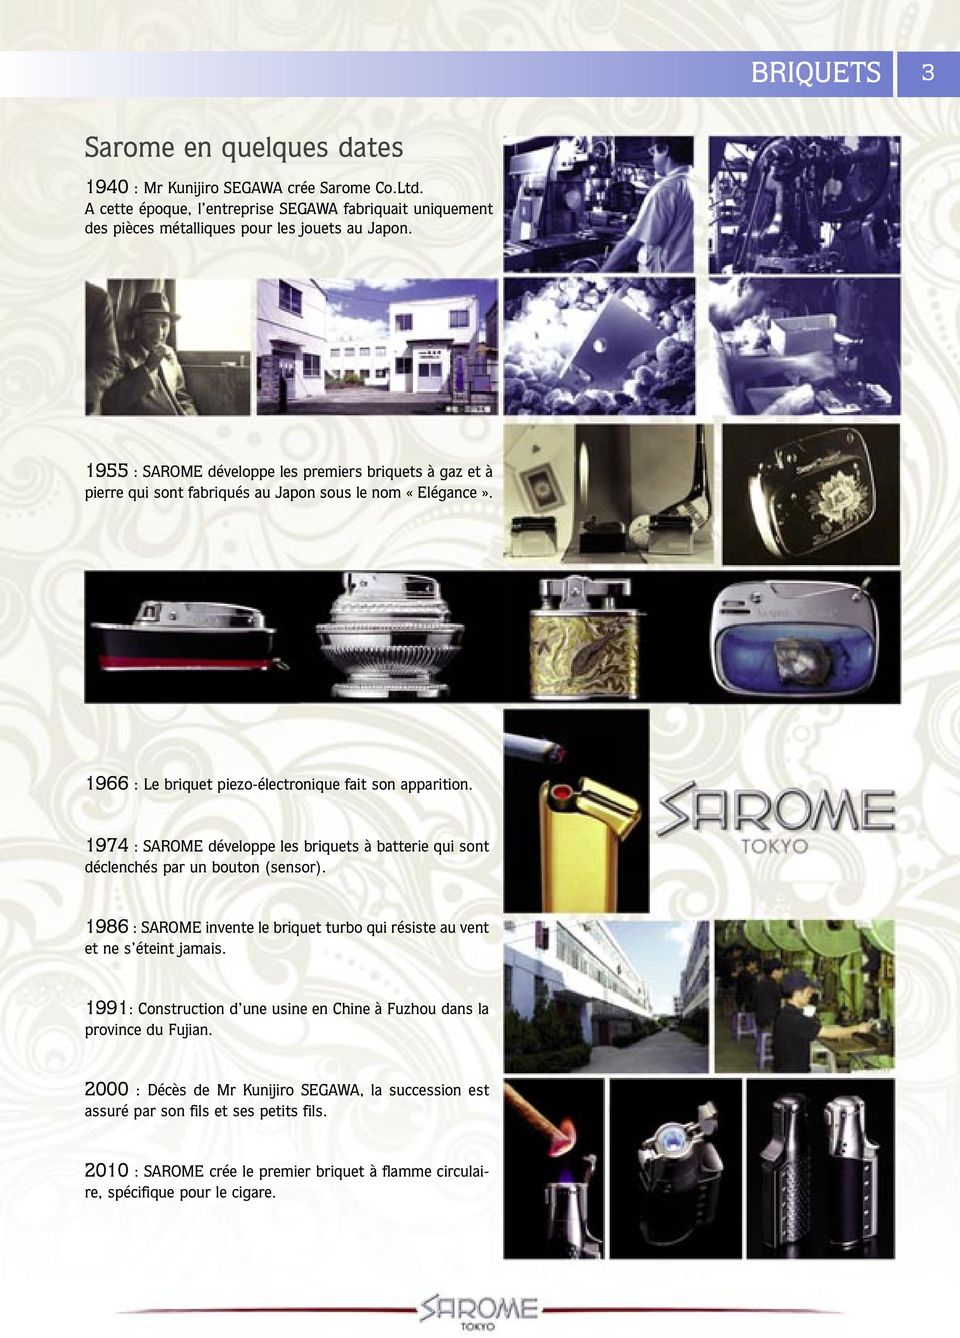 1974 : SAROME développe les briquets à batterie qui sont déclenchés par un bouton (sensor). 1986 : SAROME invente le briquet turbo qui résiste au vent et ne s éteint jamais.